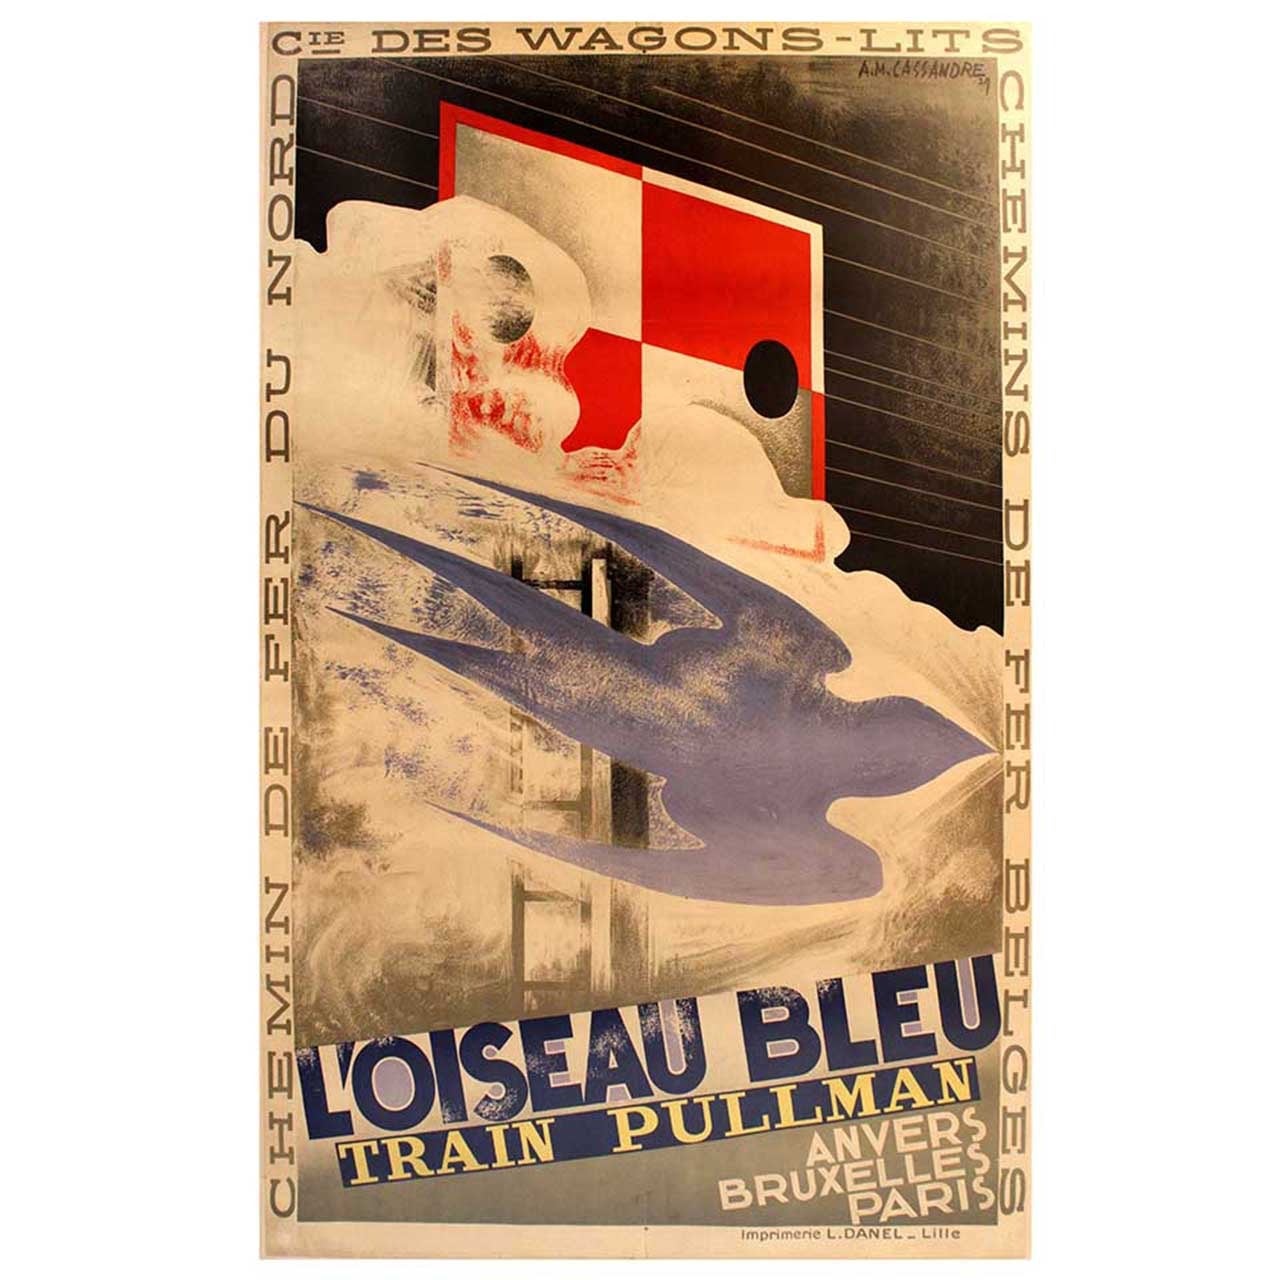 Original Vintage 1929 Art Deco Pullman Train Poster by Cassandre - L'Oiseau Bleu